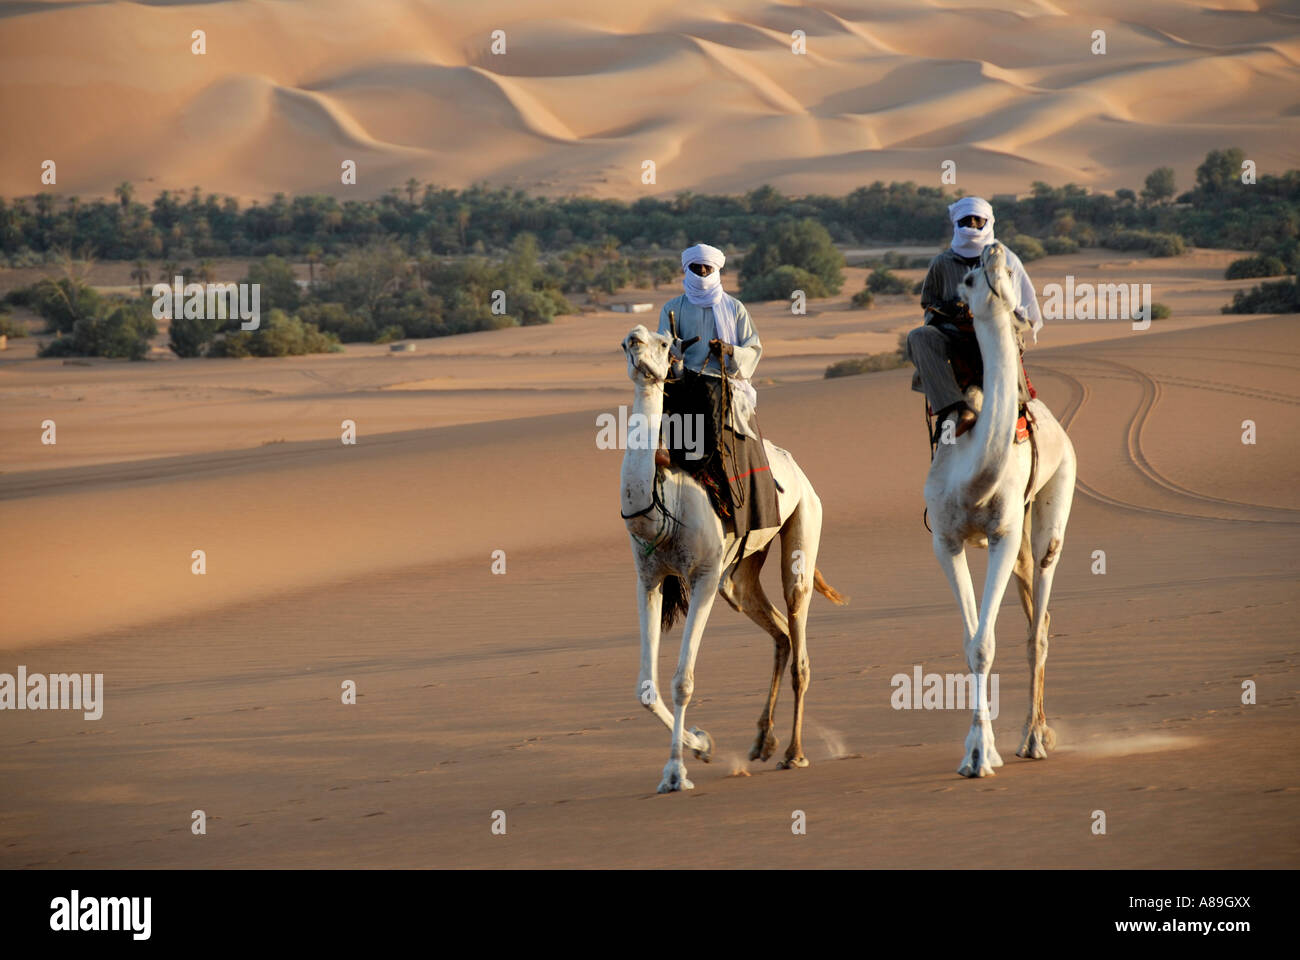 Deux ride touareg élégamment sur leurs chameaux dans le désert Mandara, Désert de Libye, Sahara, Libye Banque D'Images